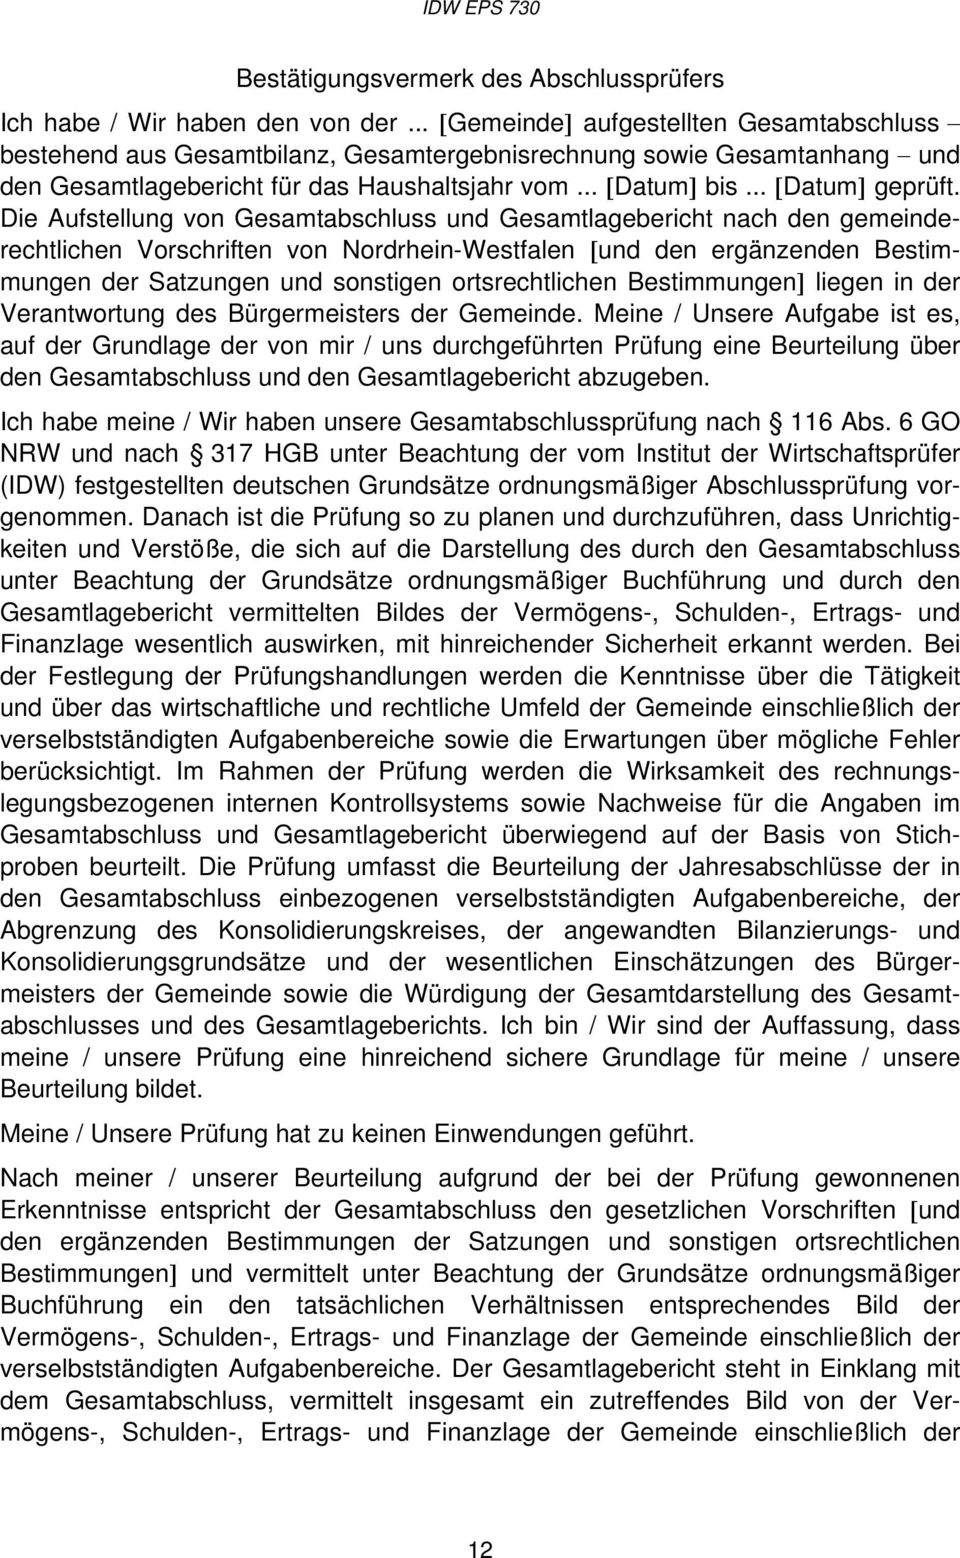 Die Aufstellung von Gesamtabschluss und Gesamtlagebericht nach den gemeinderechtlichen Vorschriften von Nordrhein-Westfalen [und den ergänzenden Bestimmungen der Satzungen und sonstigen